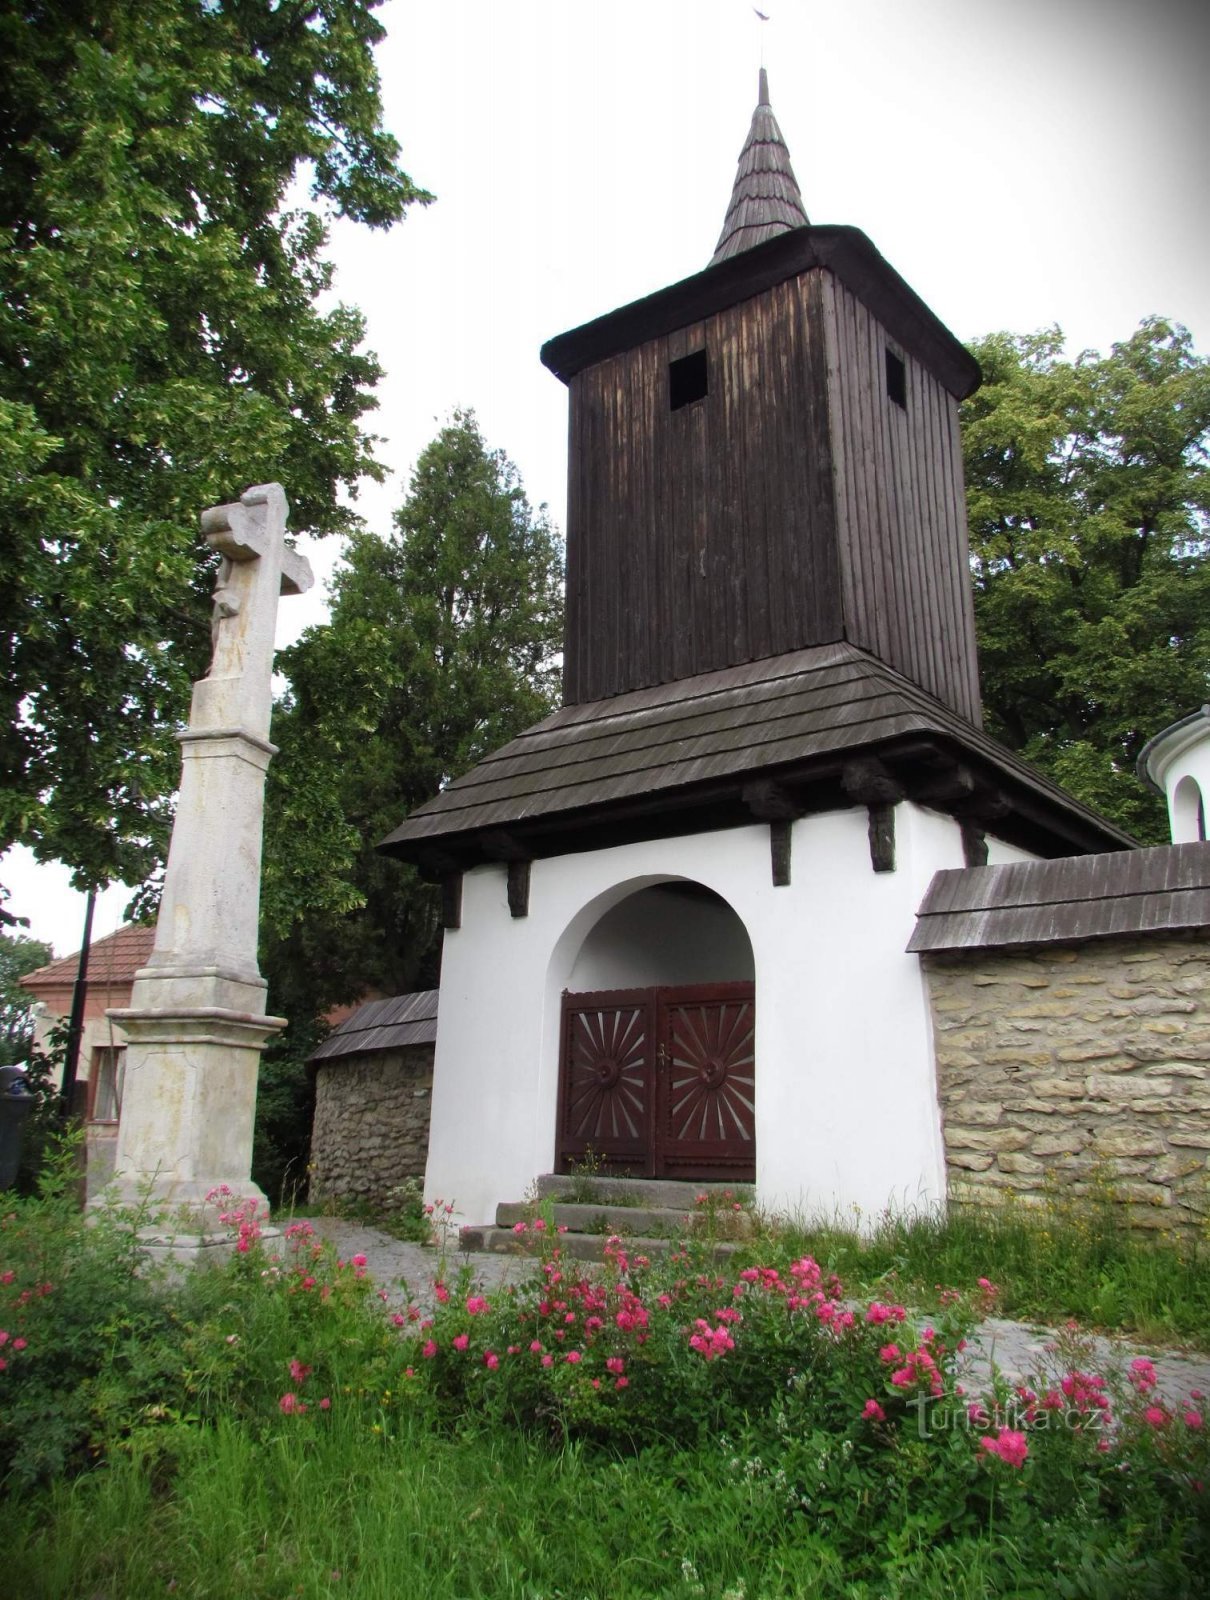 Česká Třebová - the most memorable sacral building